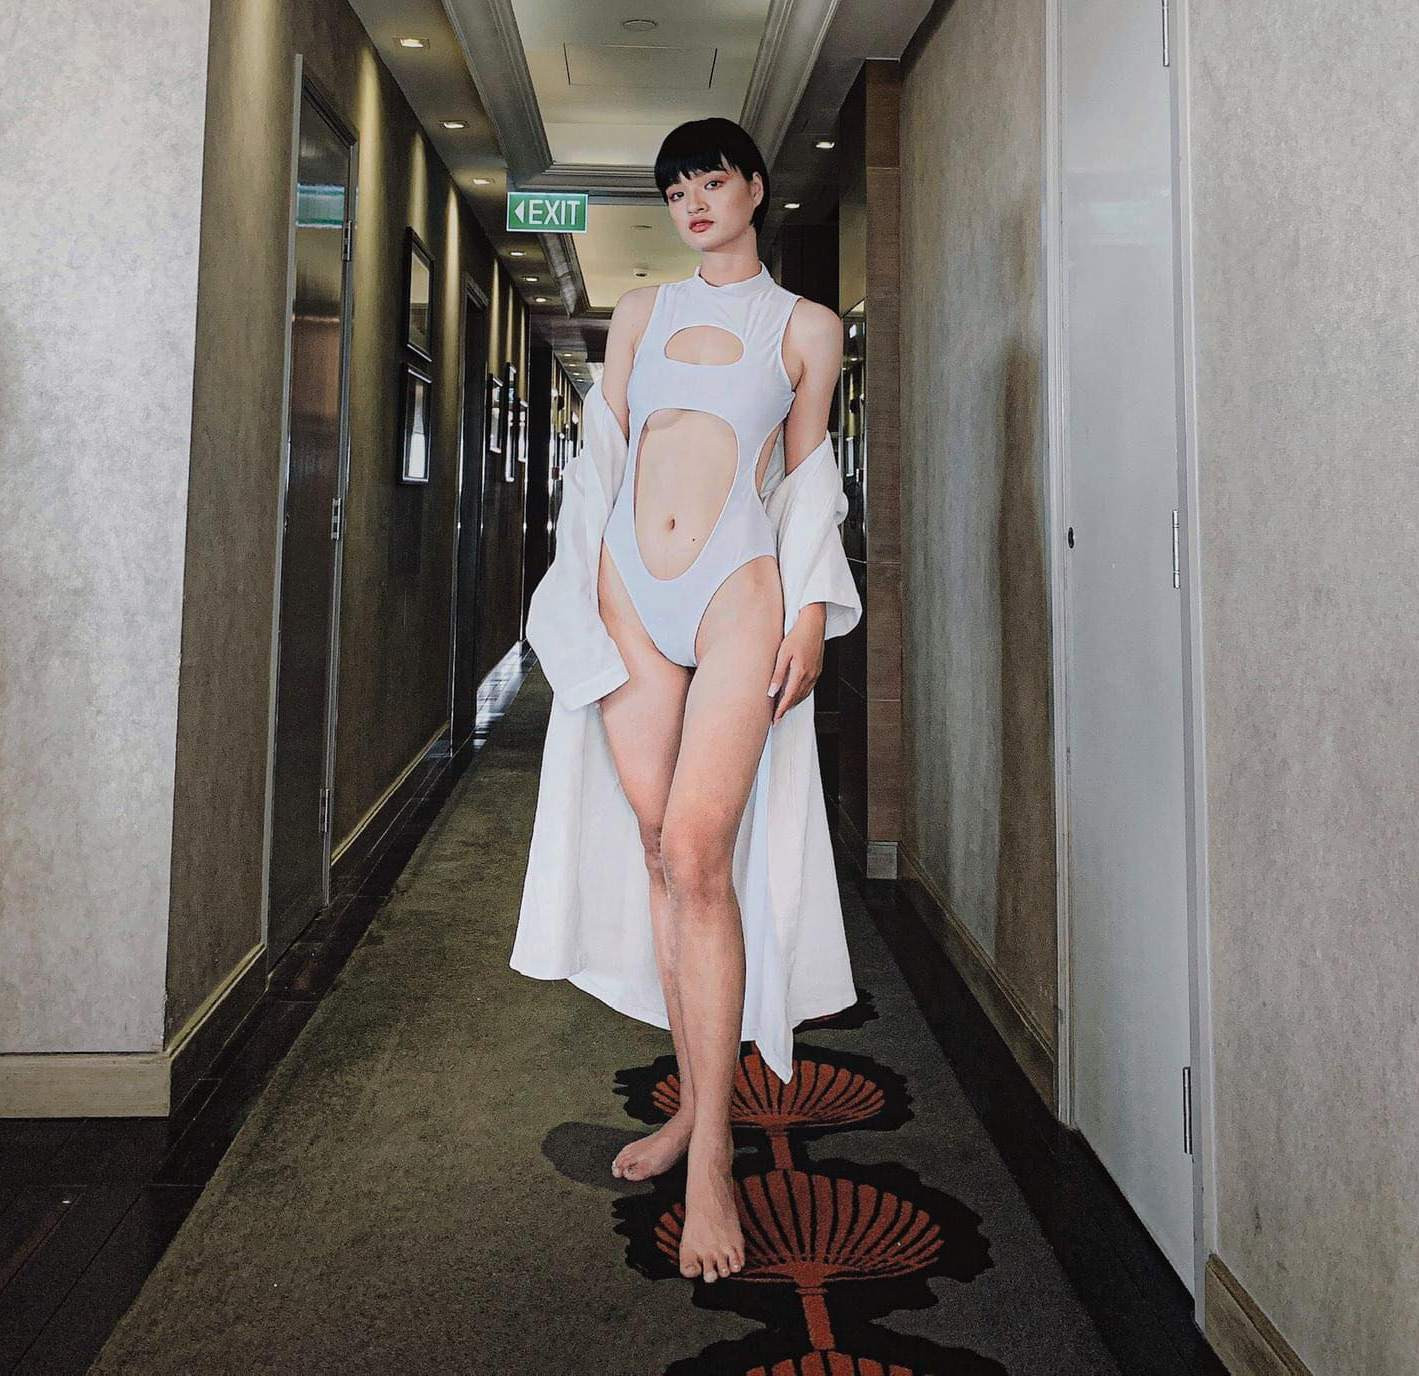 Thí sinh Hoa hậu Hoàn vũ nổi bật với đôi chân dài miên man - 1